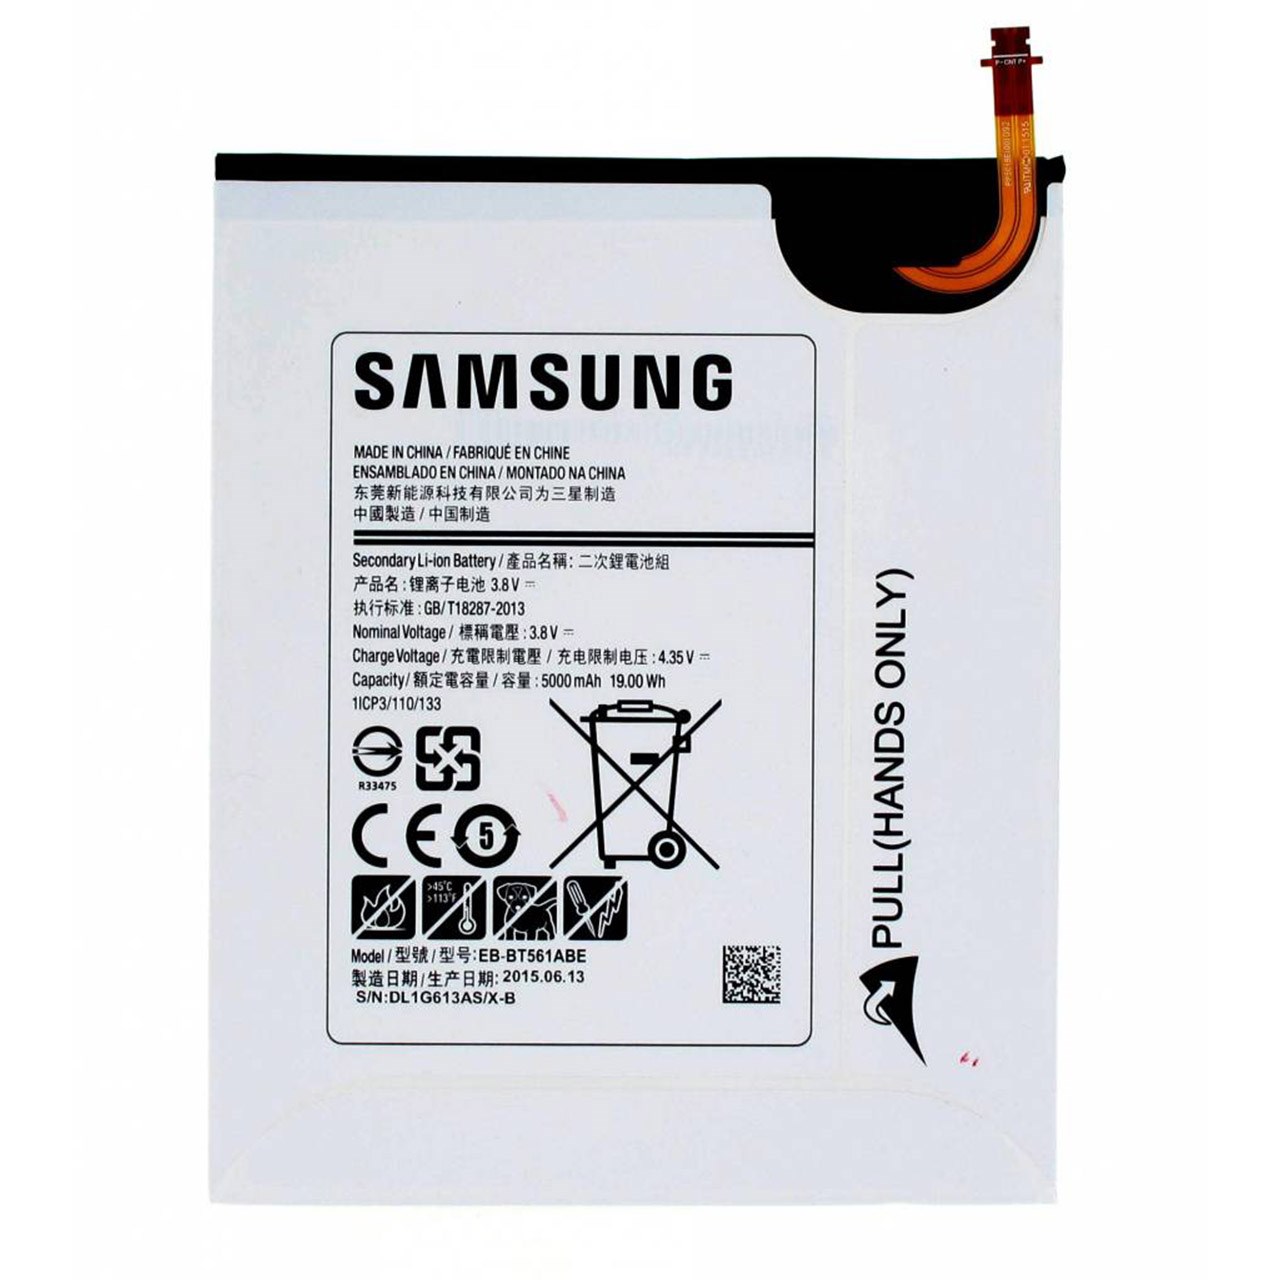 باتری تبلت مدل EB-BT561ABE با ظرفیت 5000 میلی آمپر مناسب برای Galaxy Tab E 9.6                     غیر اصل